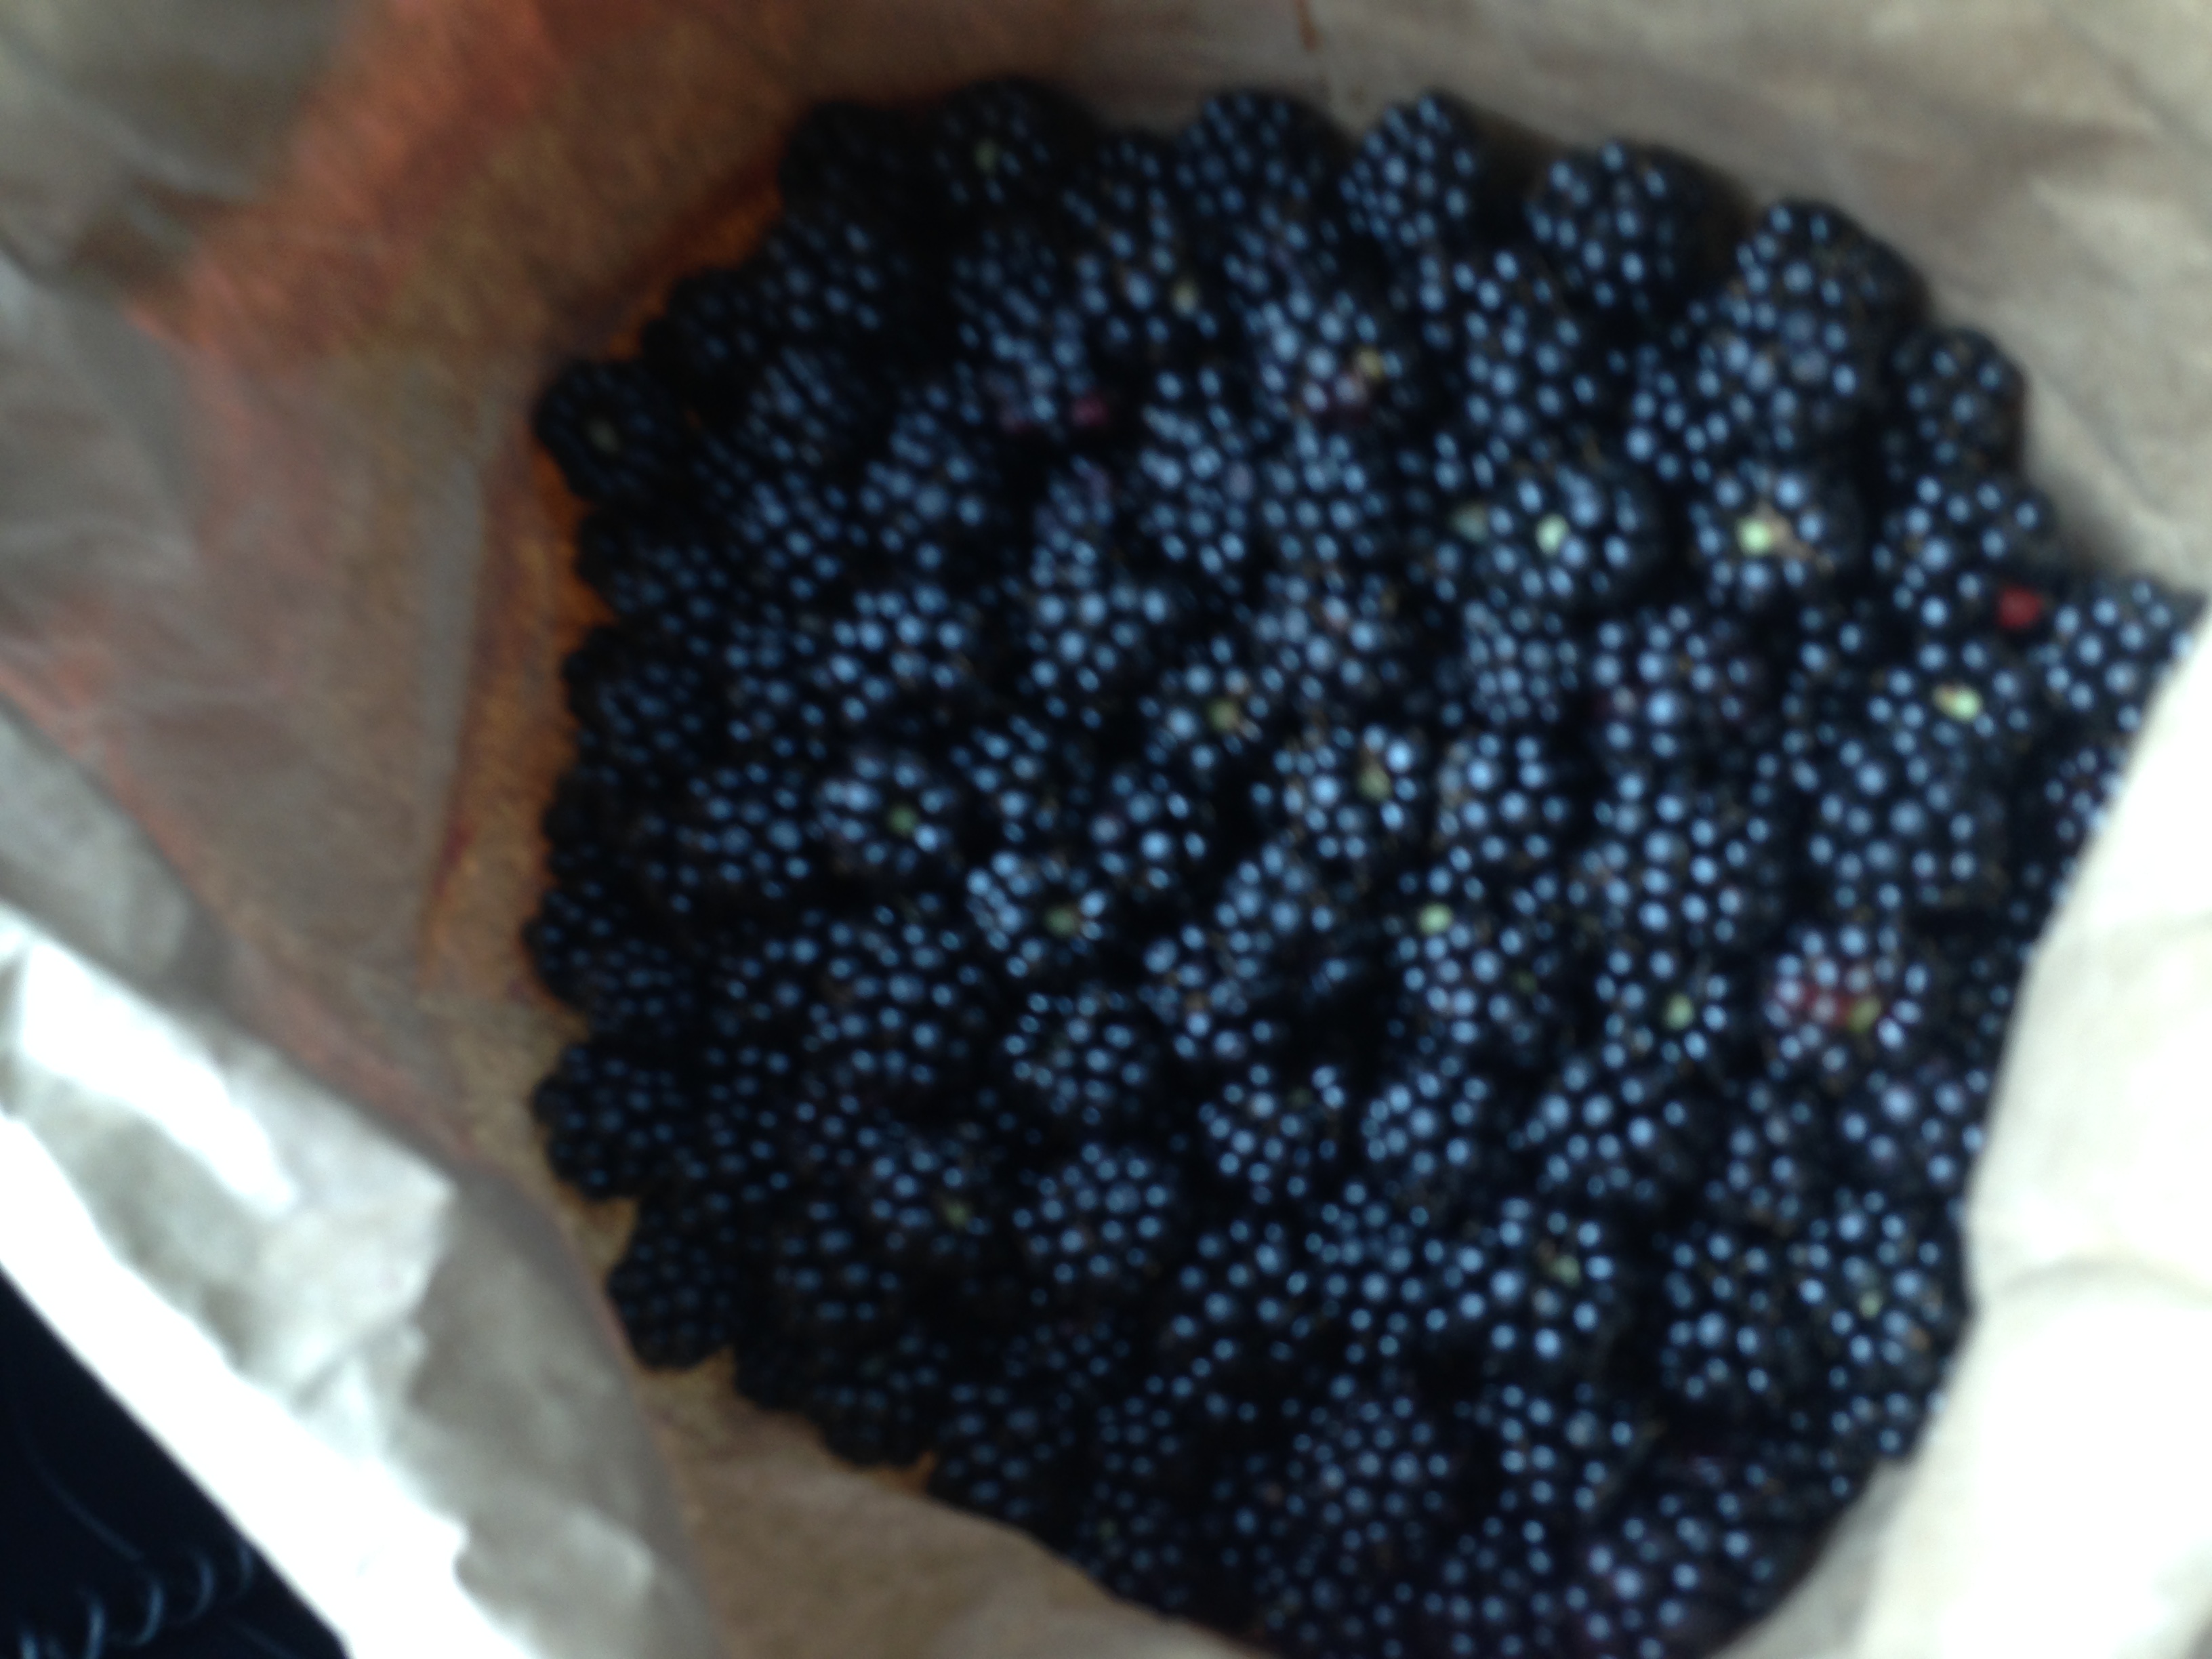 WA-organic-heirloom-blackberry-cuttings-huge-berries